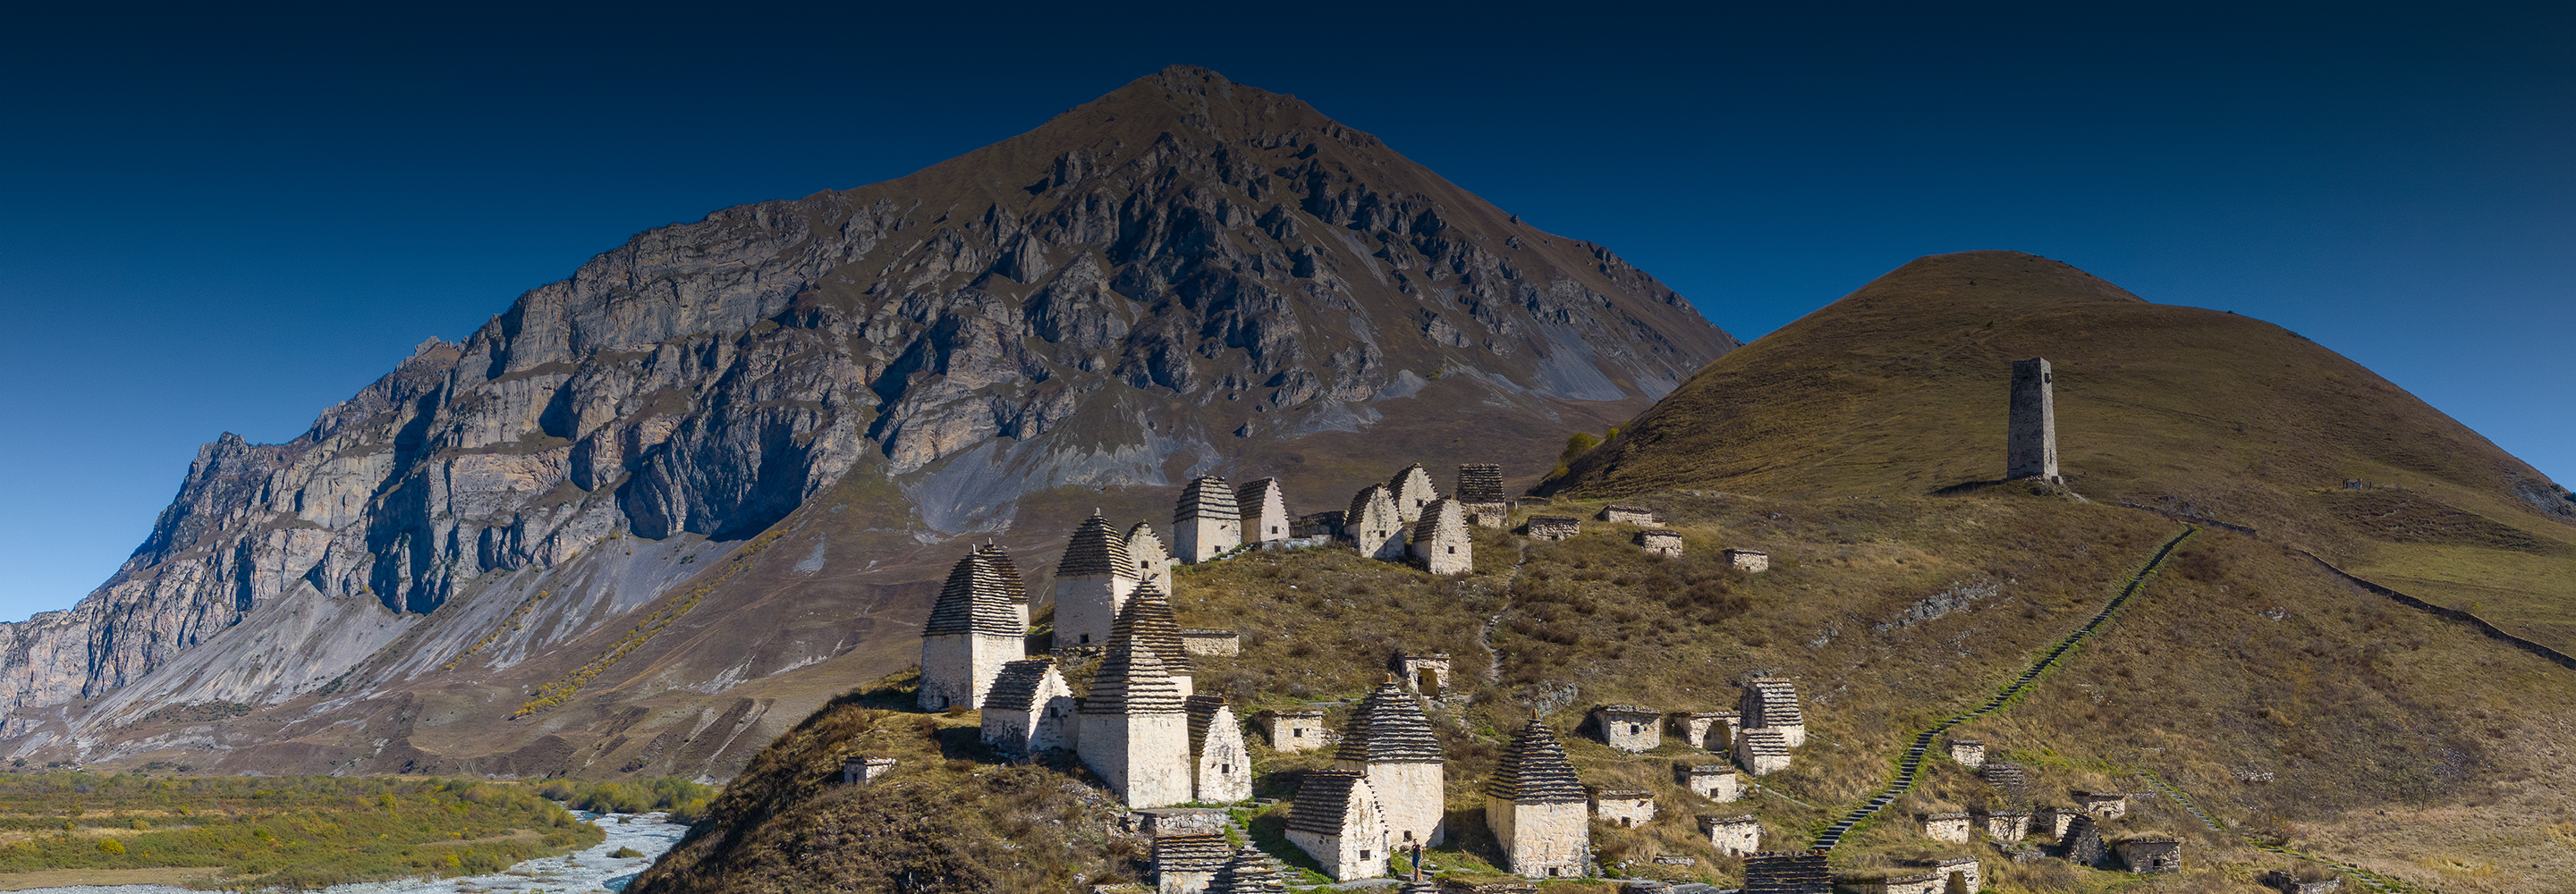 Что посмотреть на Кавказе за неделю: 13 достопримечательностей